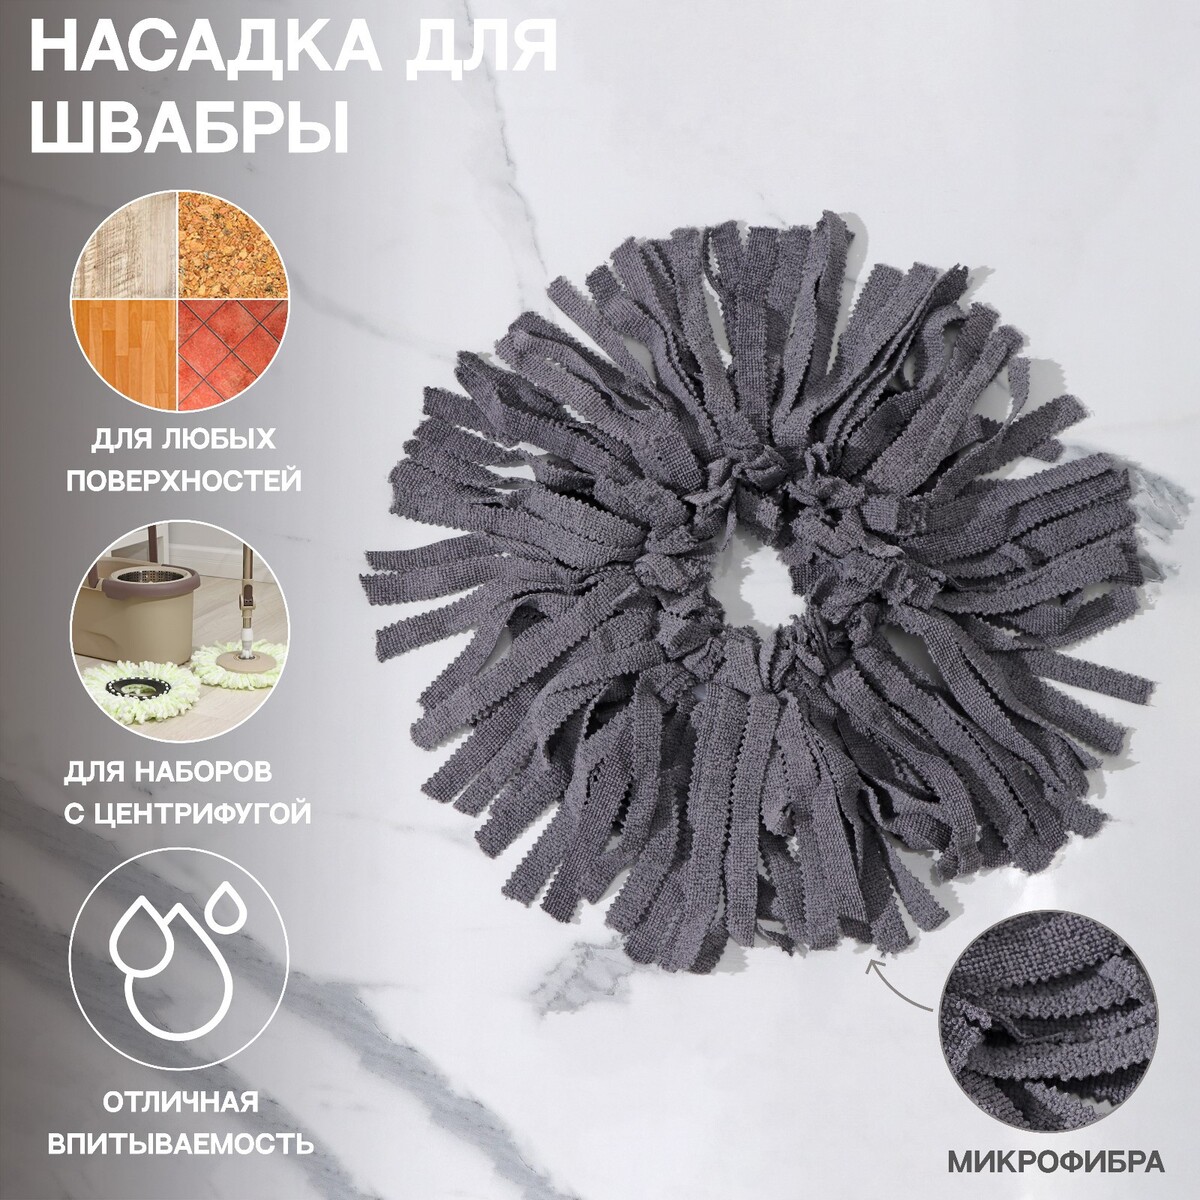 Насадка для швабры (наборы для уборки с центрифугой), кольцо 16 см, микрофибра, цвет серый насадка для швабры микрофибра pol